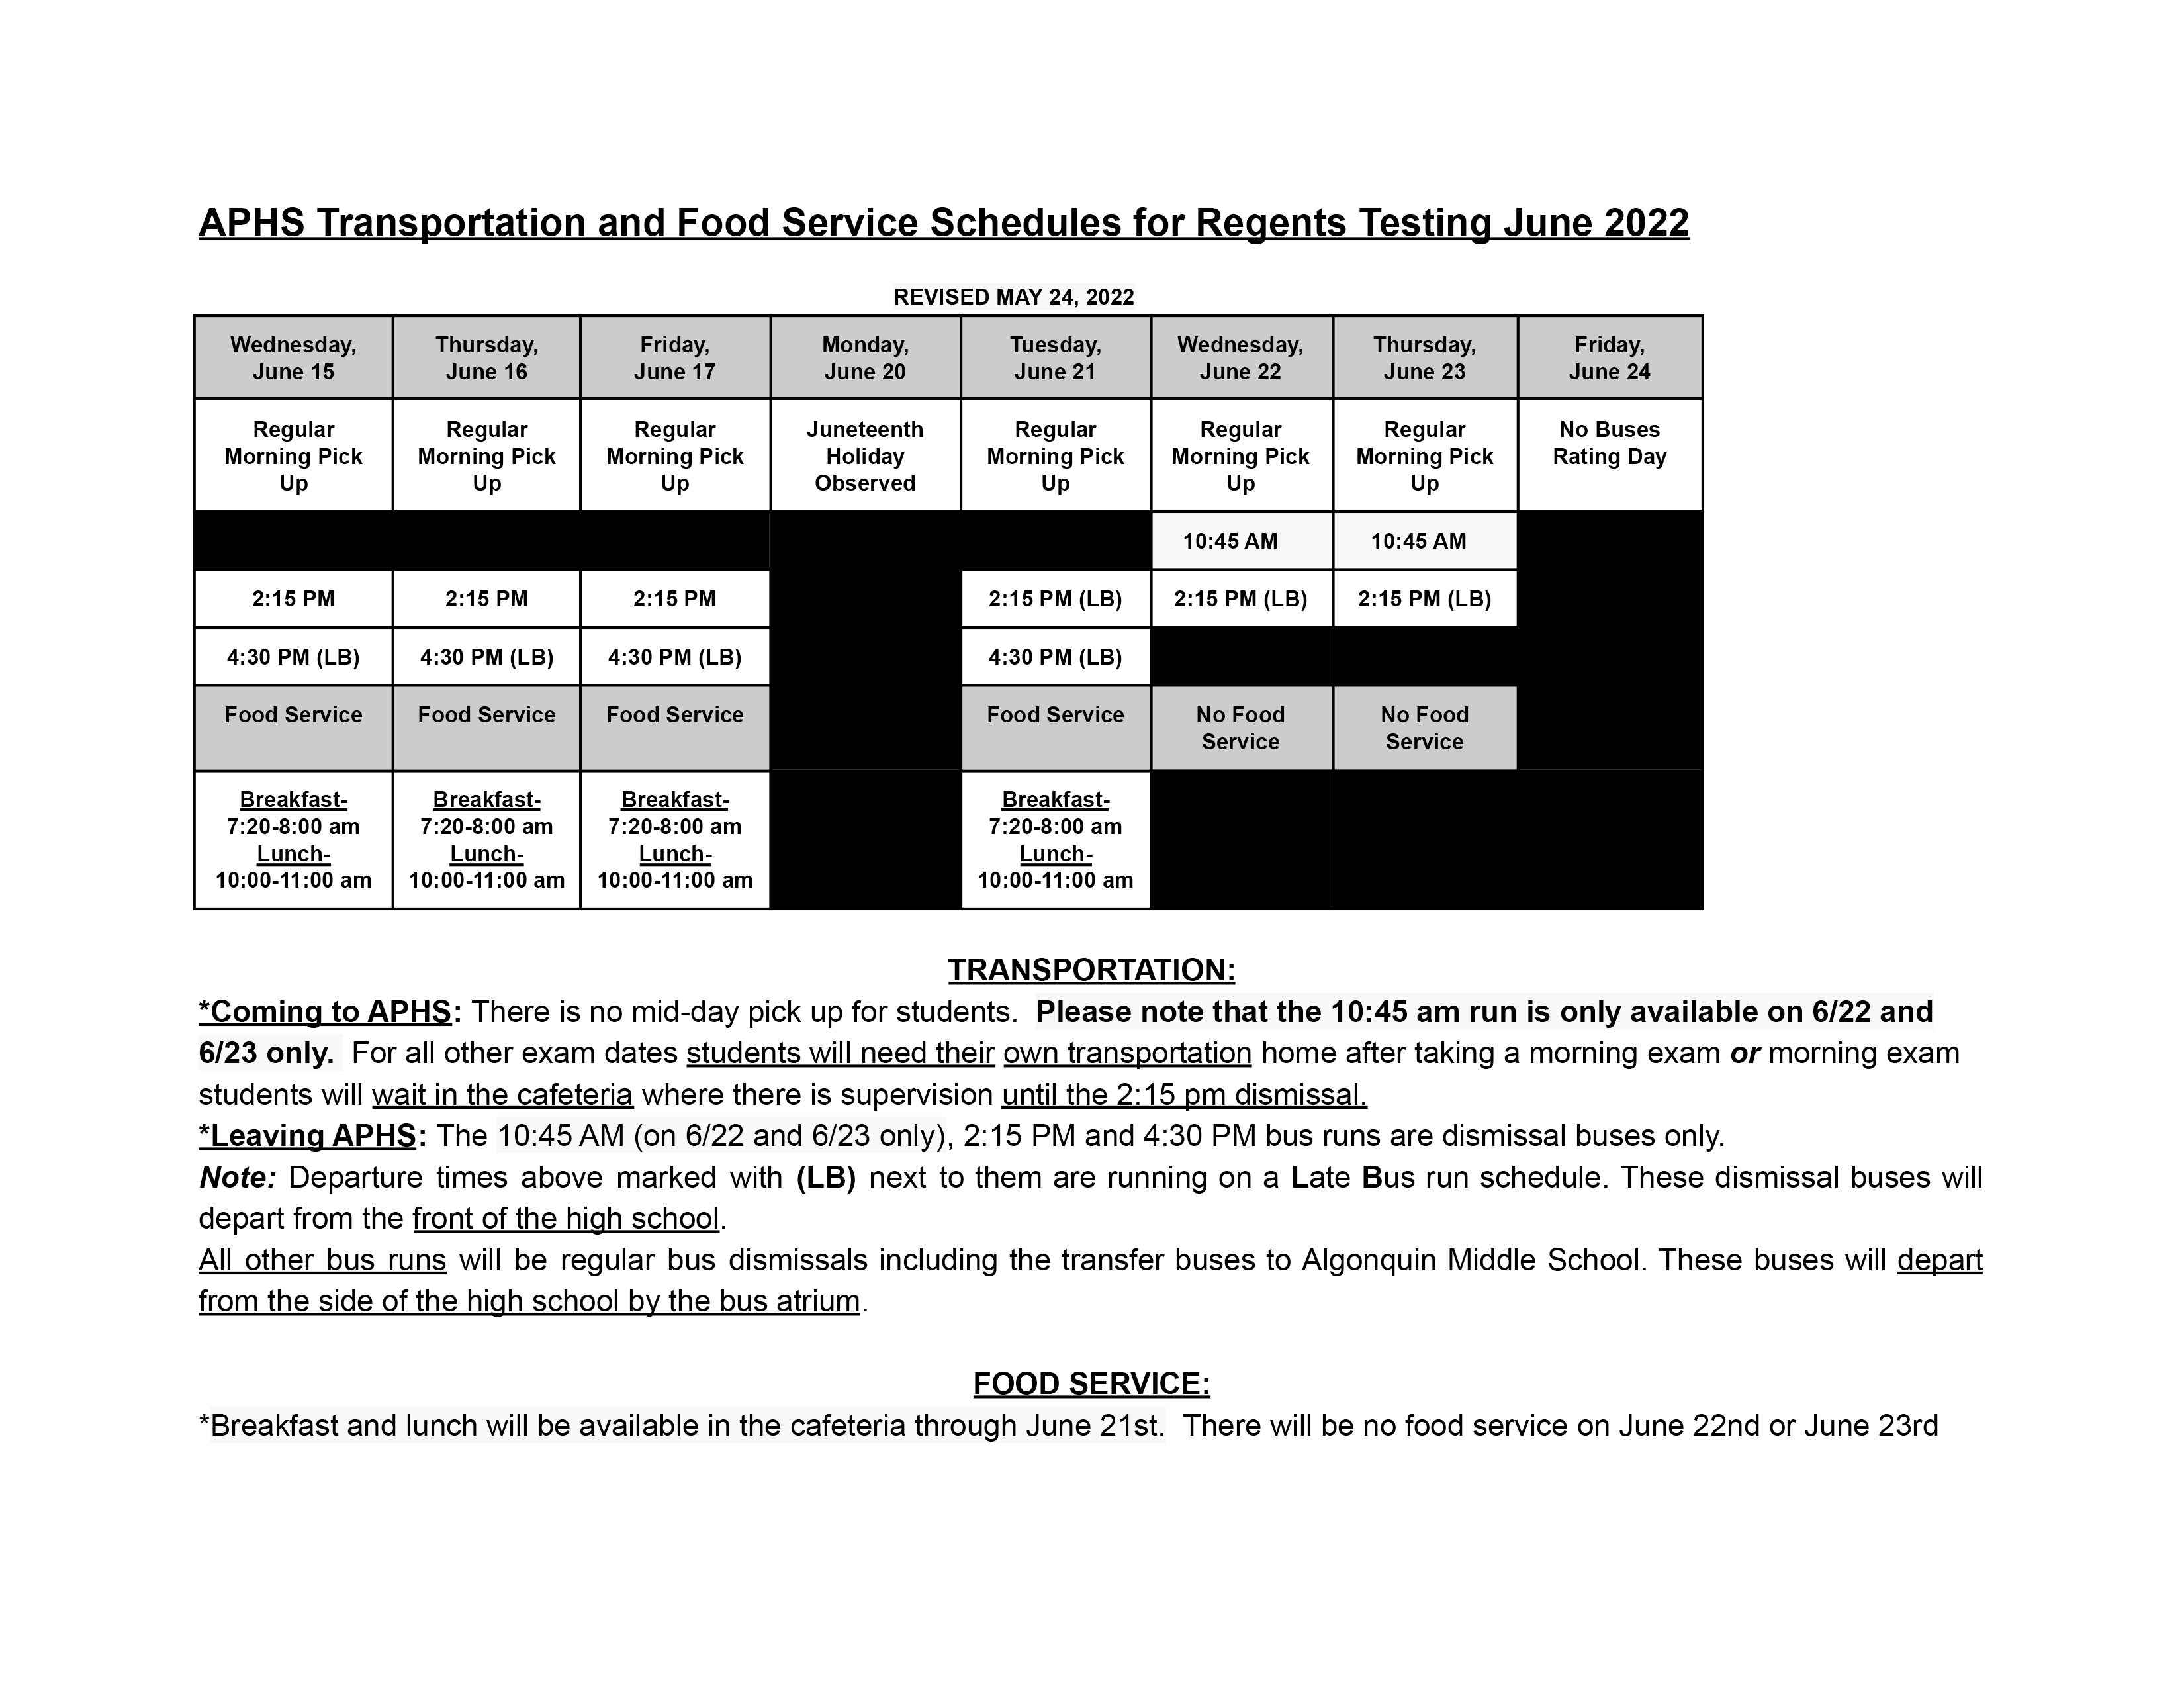 APHS Transportation Food Service SchedulesRegents Testing June 2022